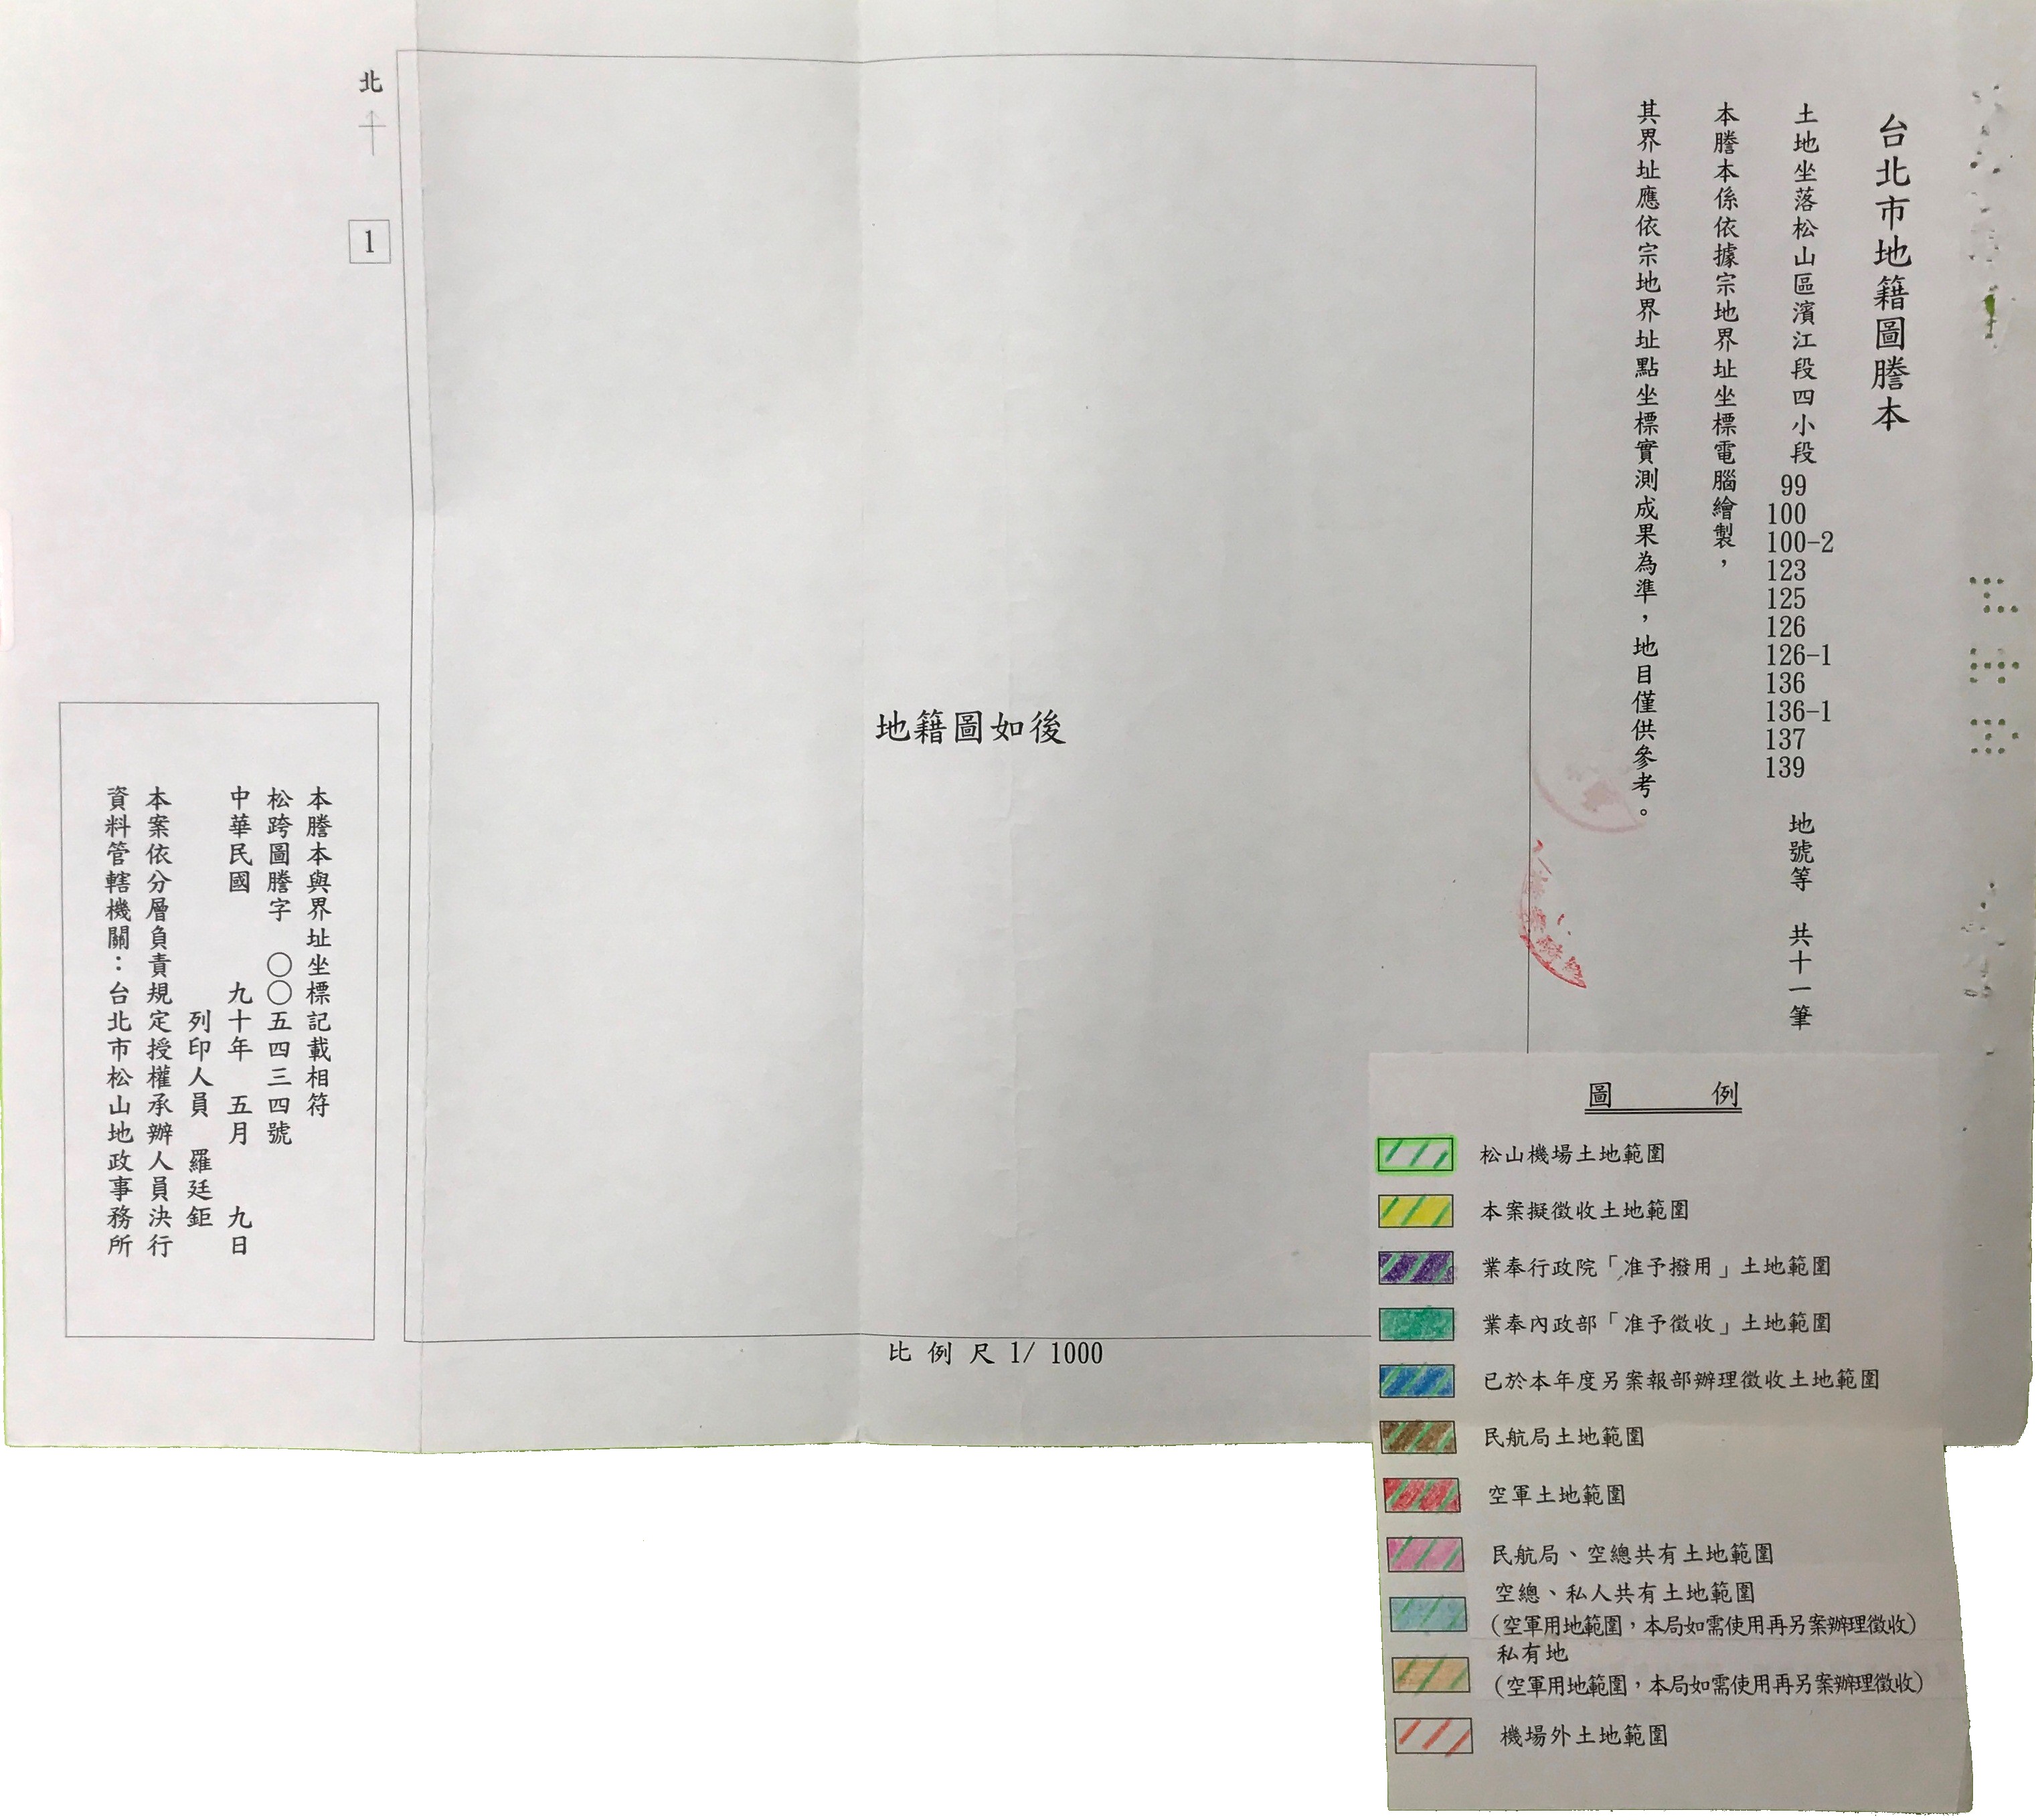 松山機場土地徵收計畫圖1.jpg